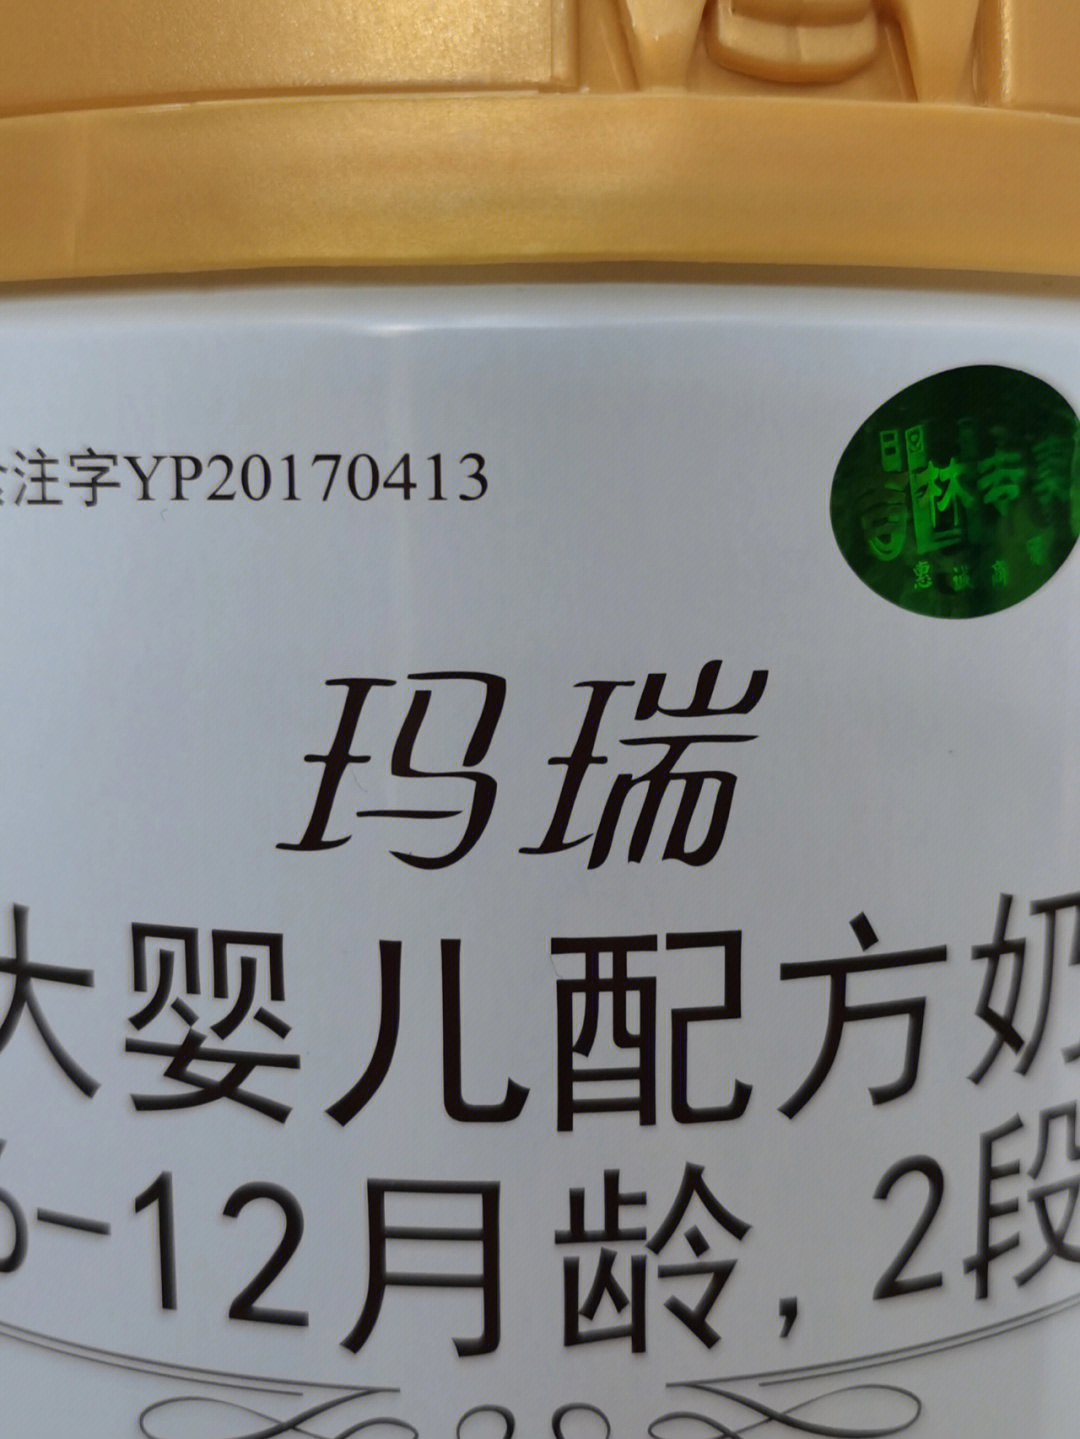 辉山玛瑞,过完年最火的奶粉品牌,国企奶粉,配方还全,价格不贵